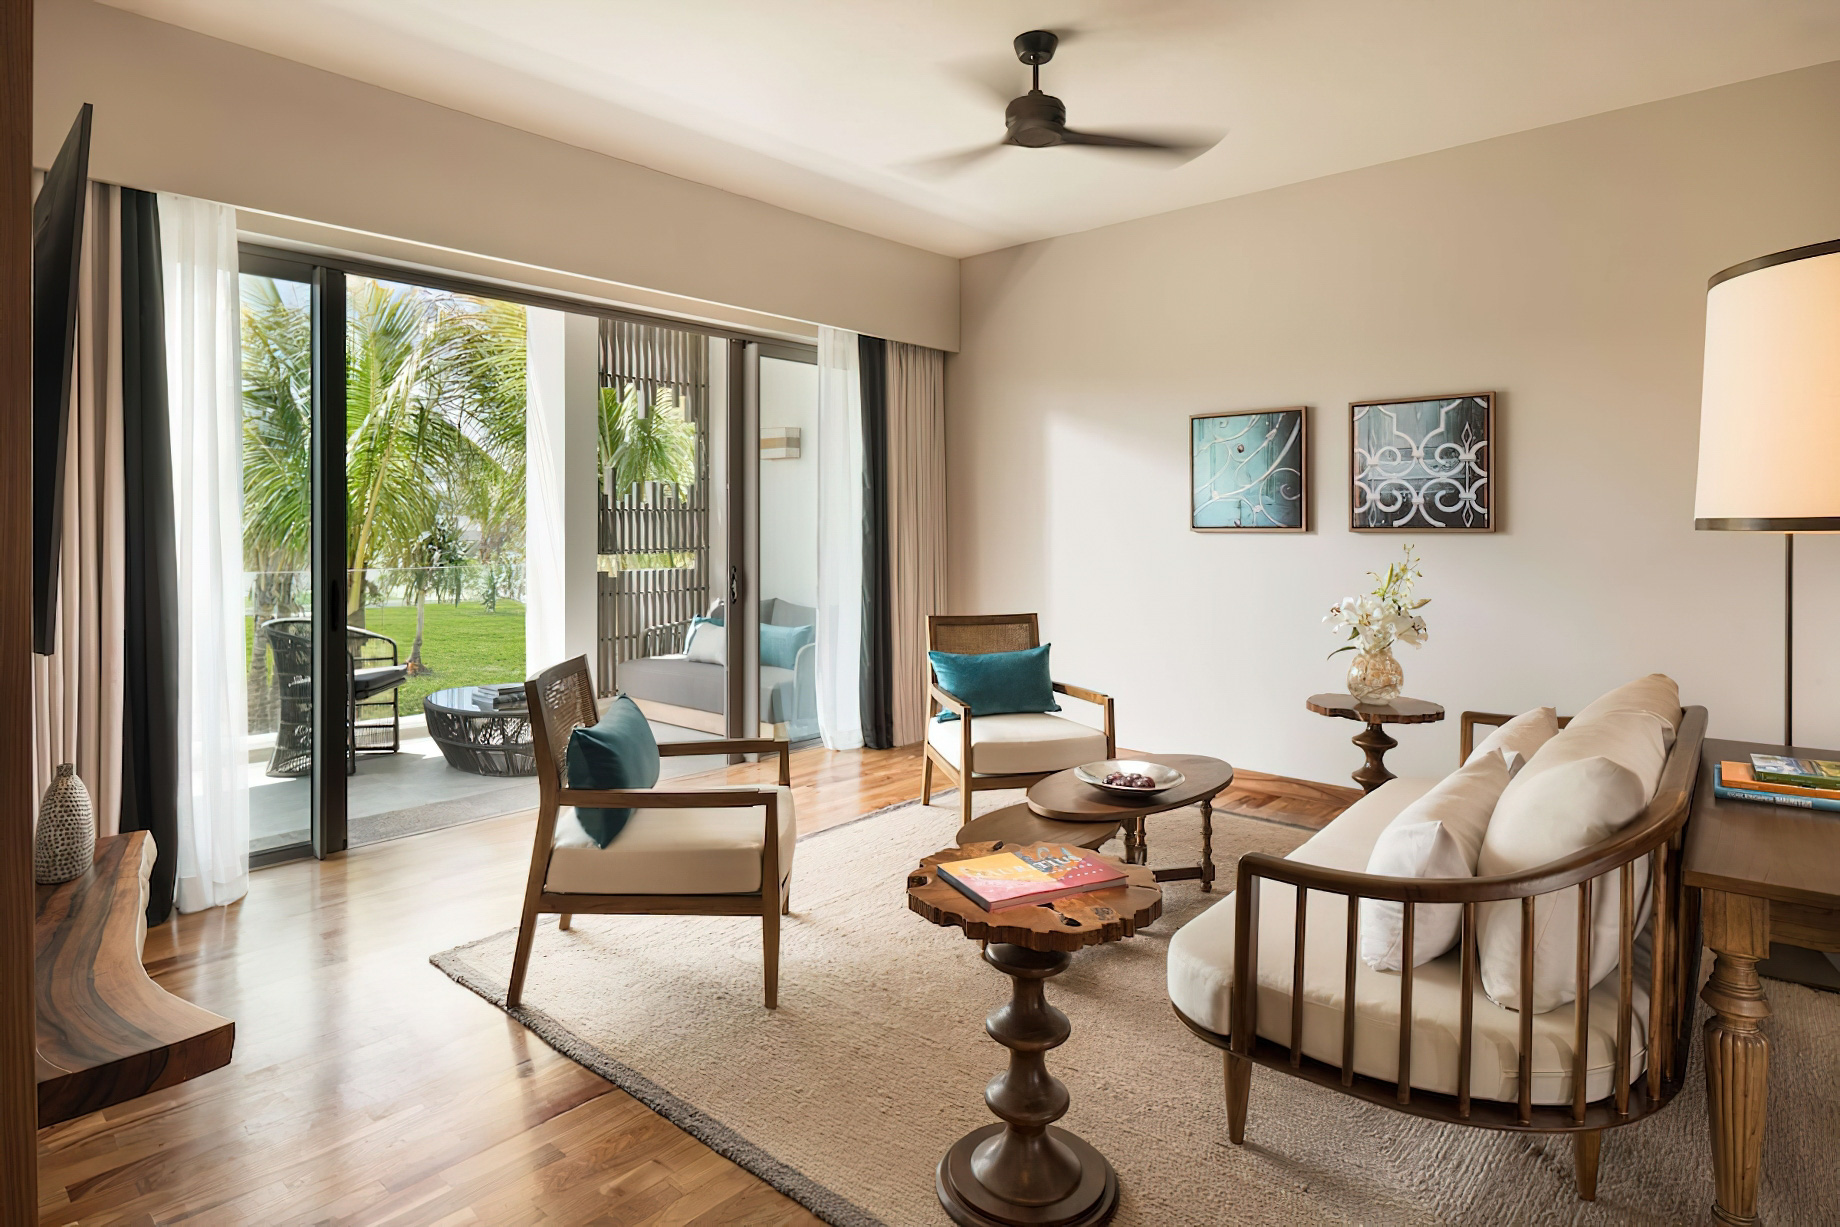 Anantara Iko Mauritius Resort & Villas – Plaine Magnien, Mauritius – Garden View Suite